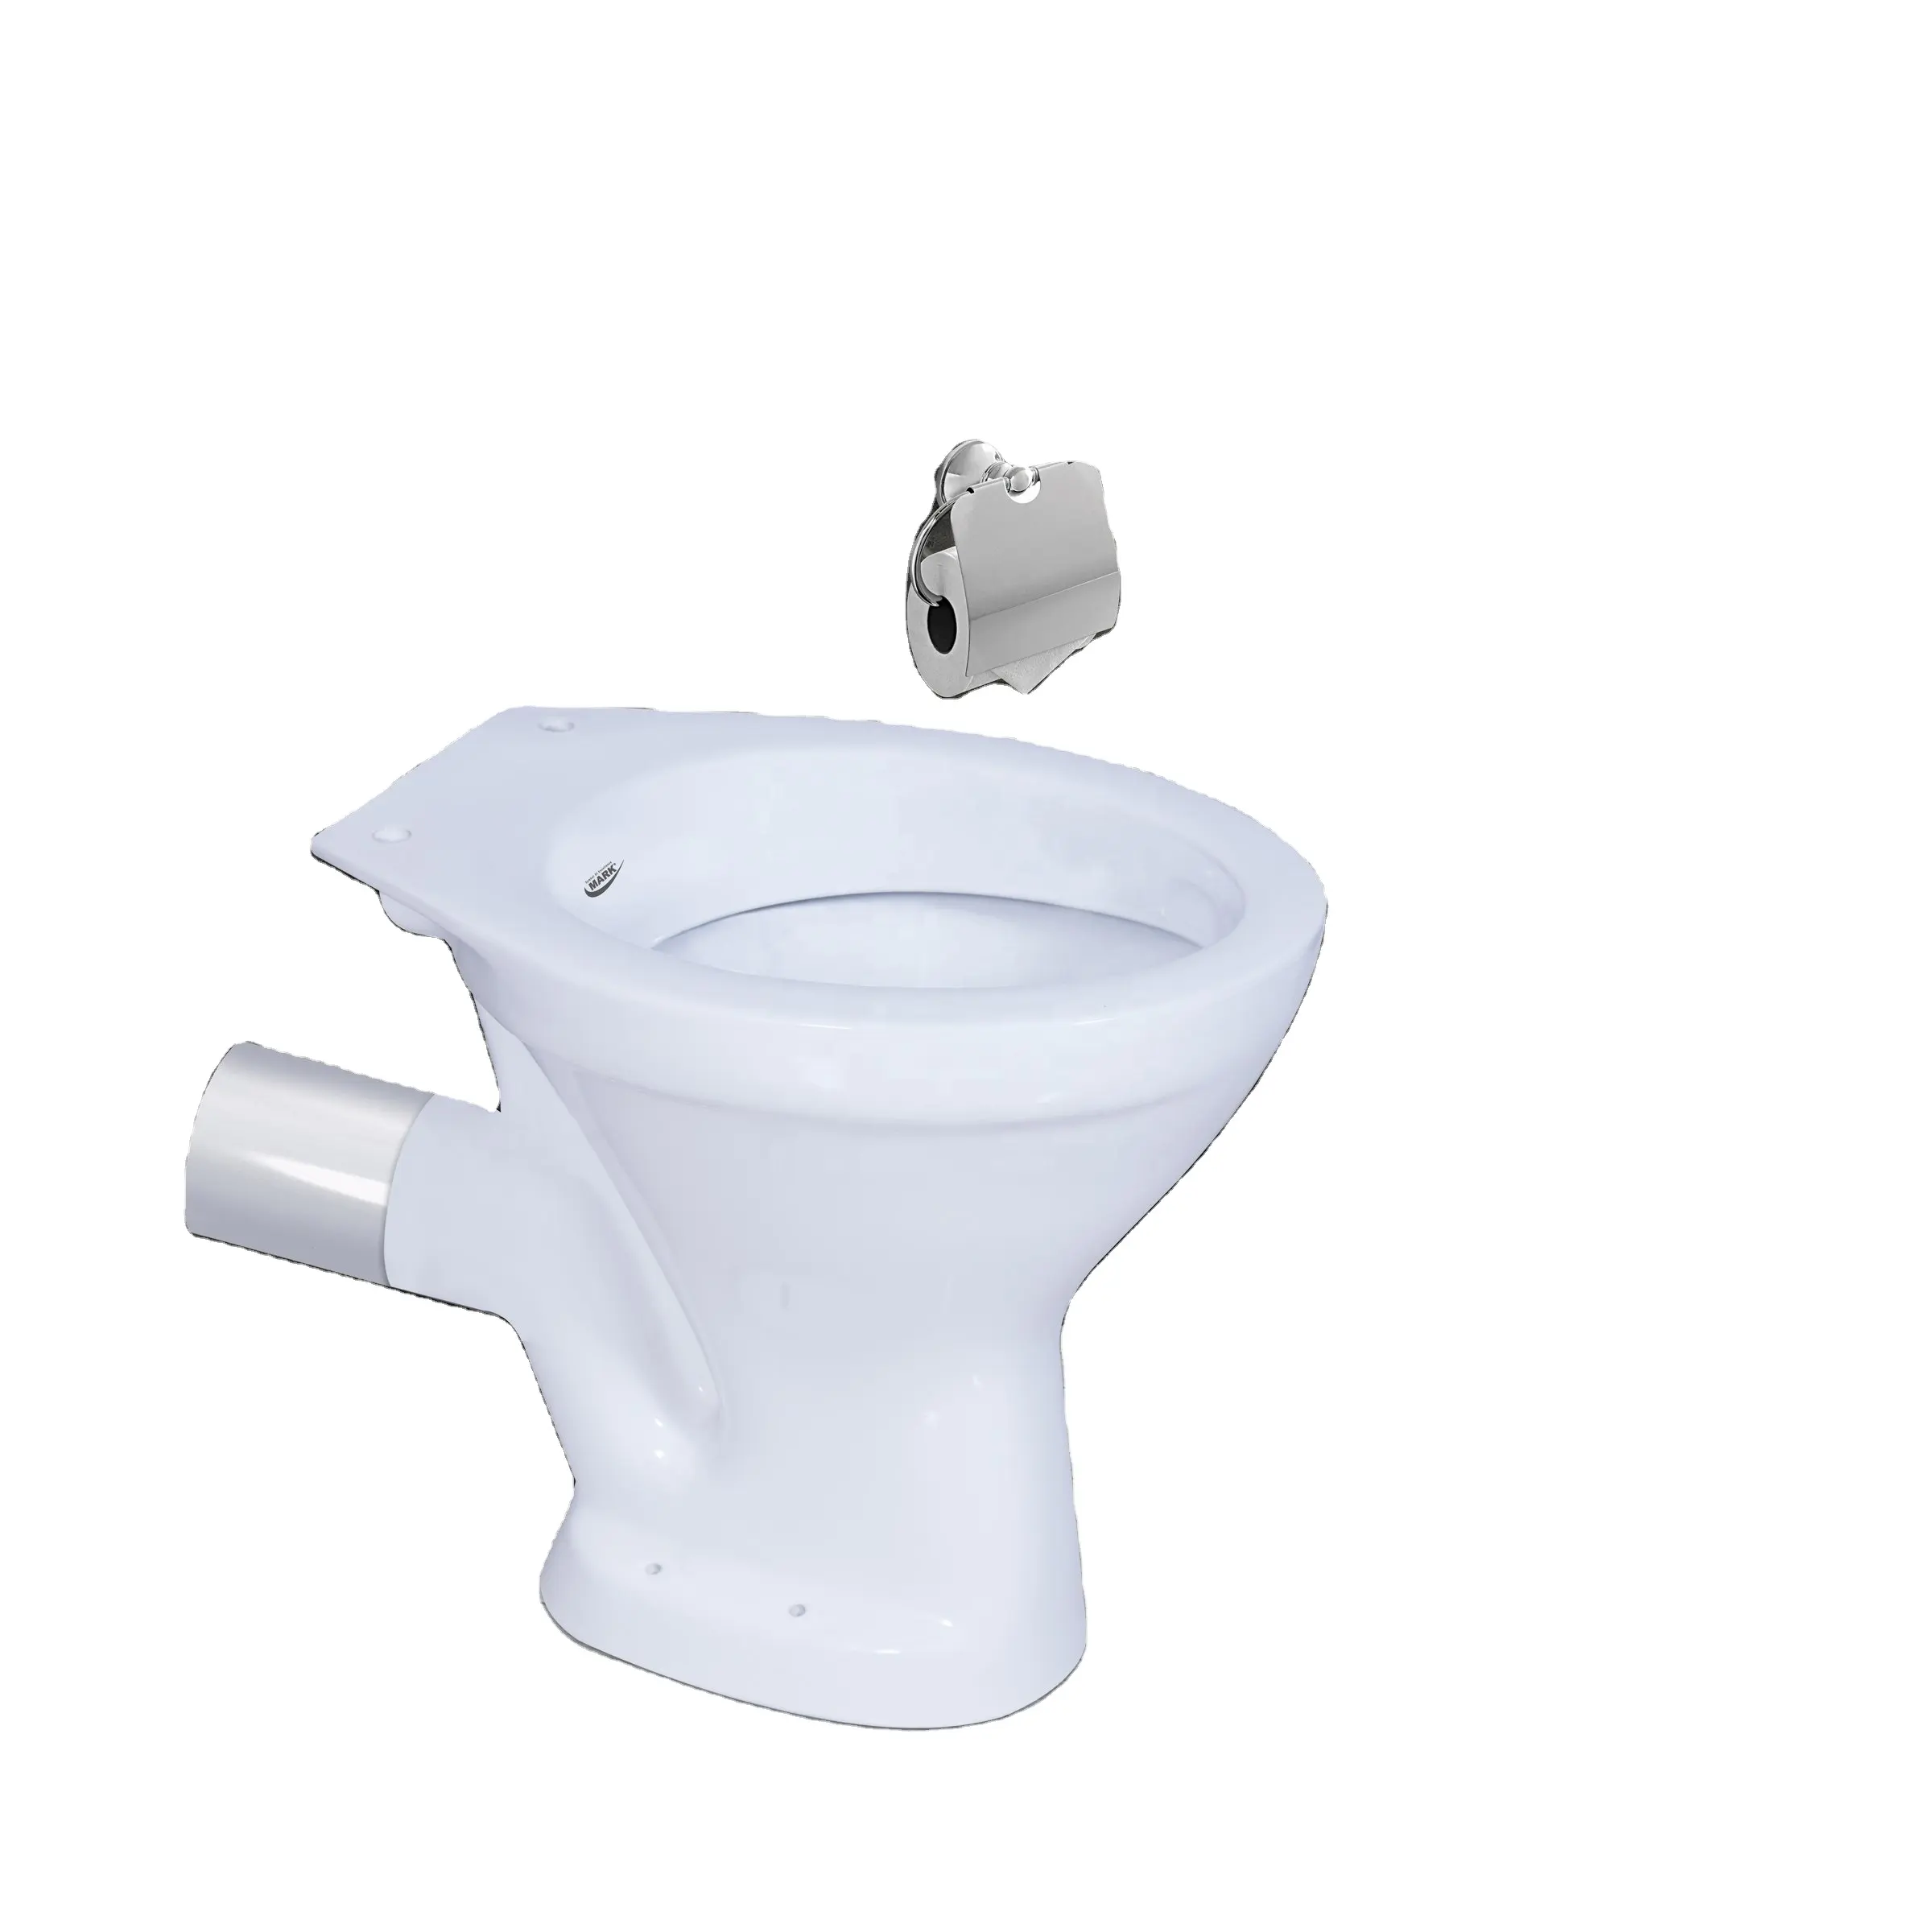 Productos de baño estándar europeo, inodoro de espalda a pared, trampa p, conjunto de baño, inodoro, inodoro